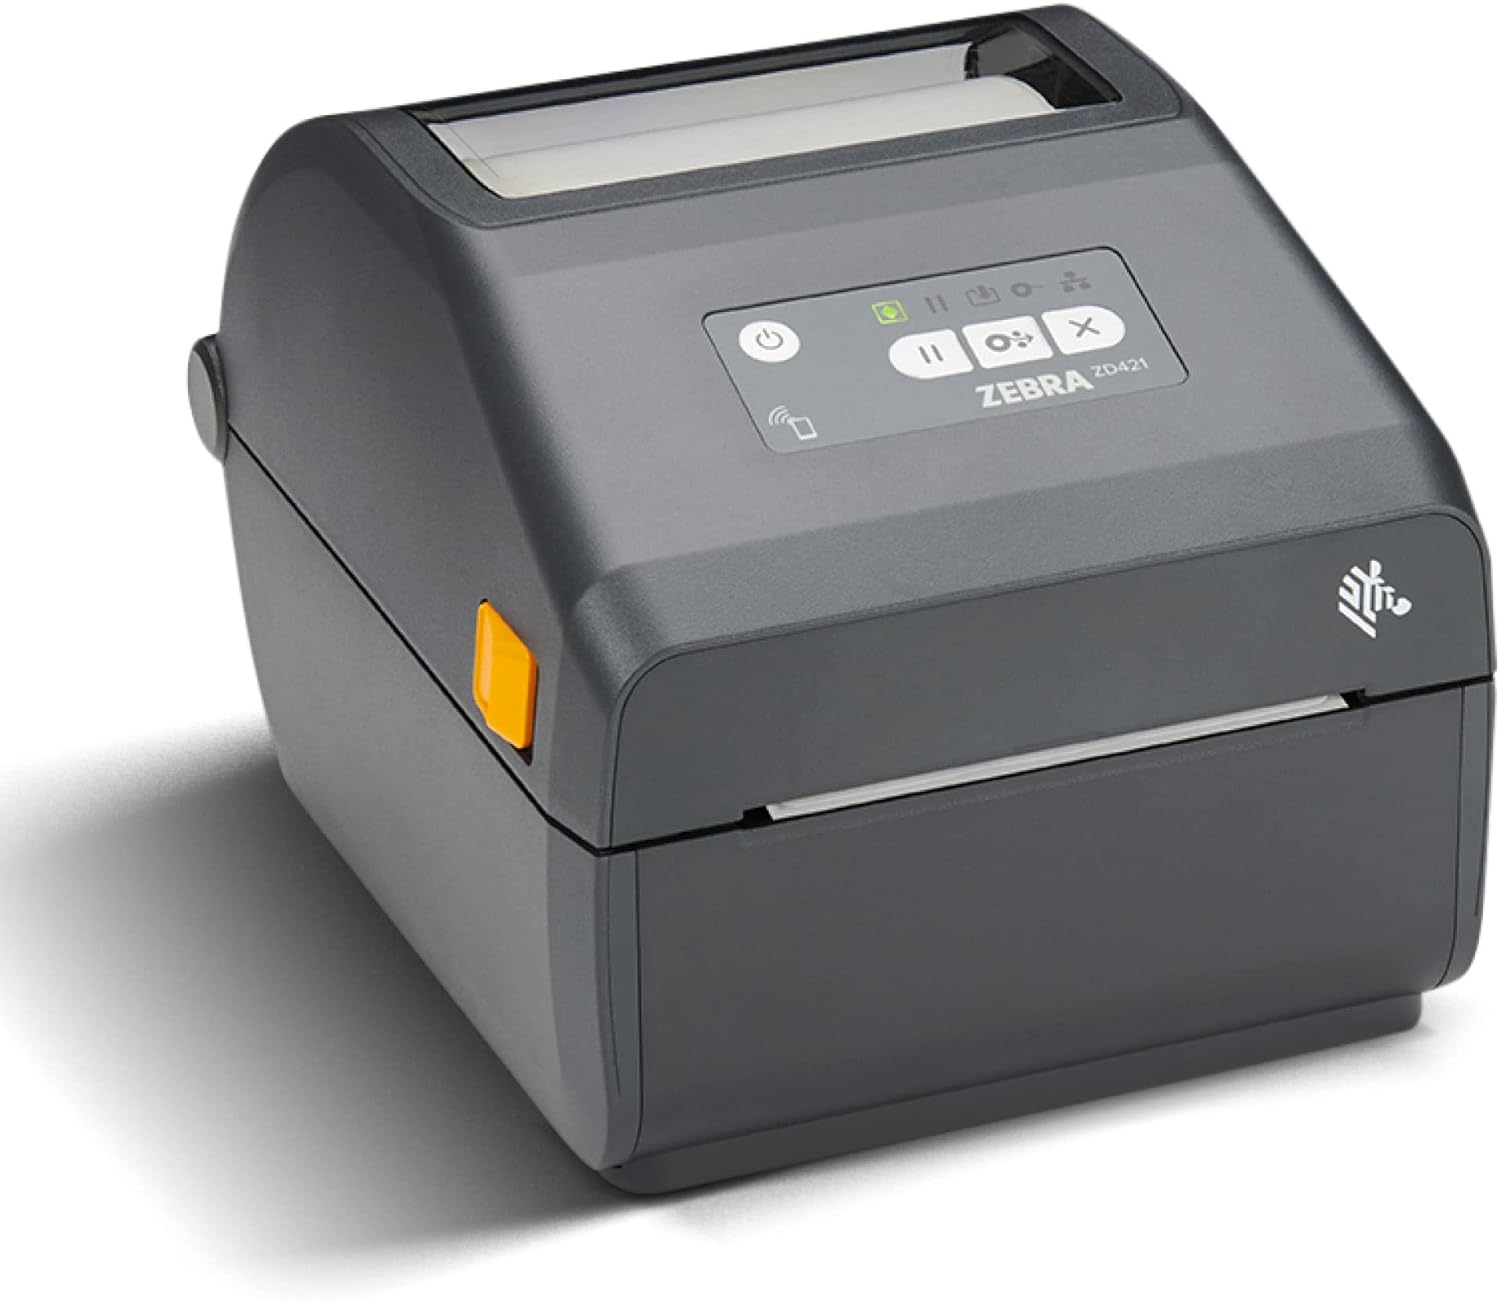 Image of Zebra ZD421 Label Printer